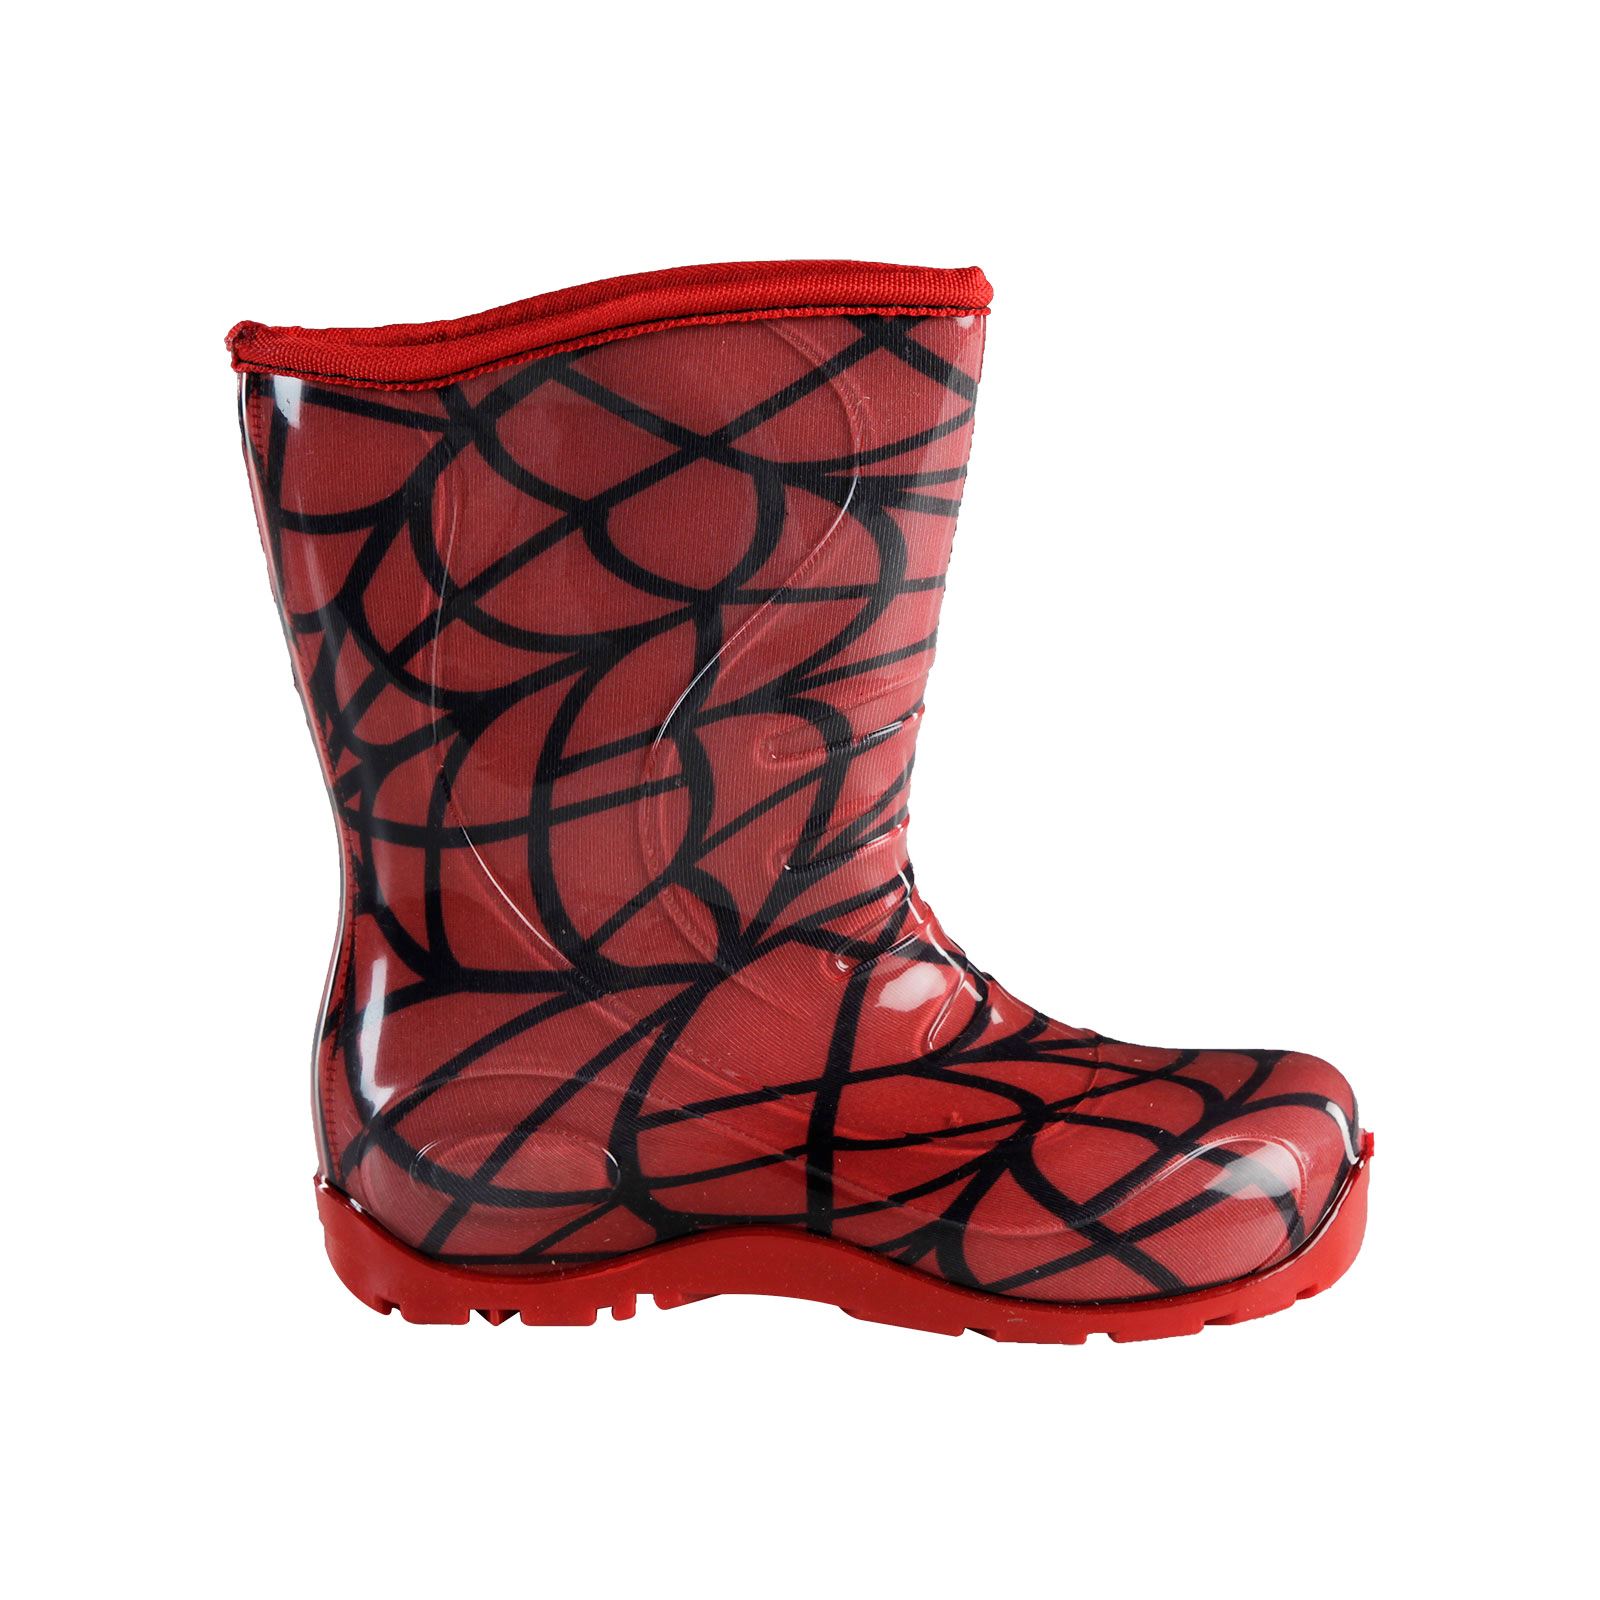 Boots Erkek Çocuk Ağ Desenli Yağmur Çizmesi 30-34 Numara Kırmızı